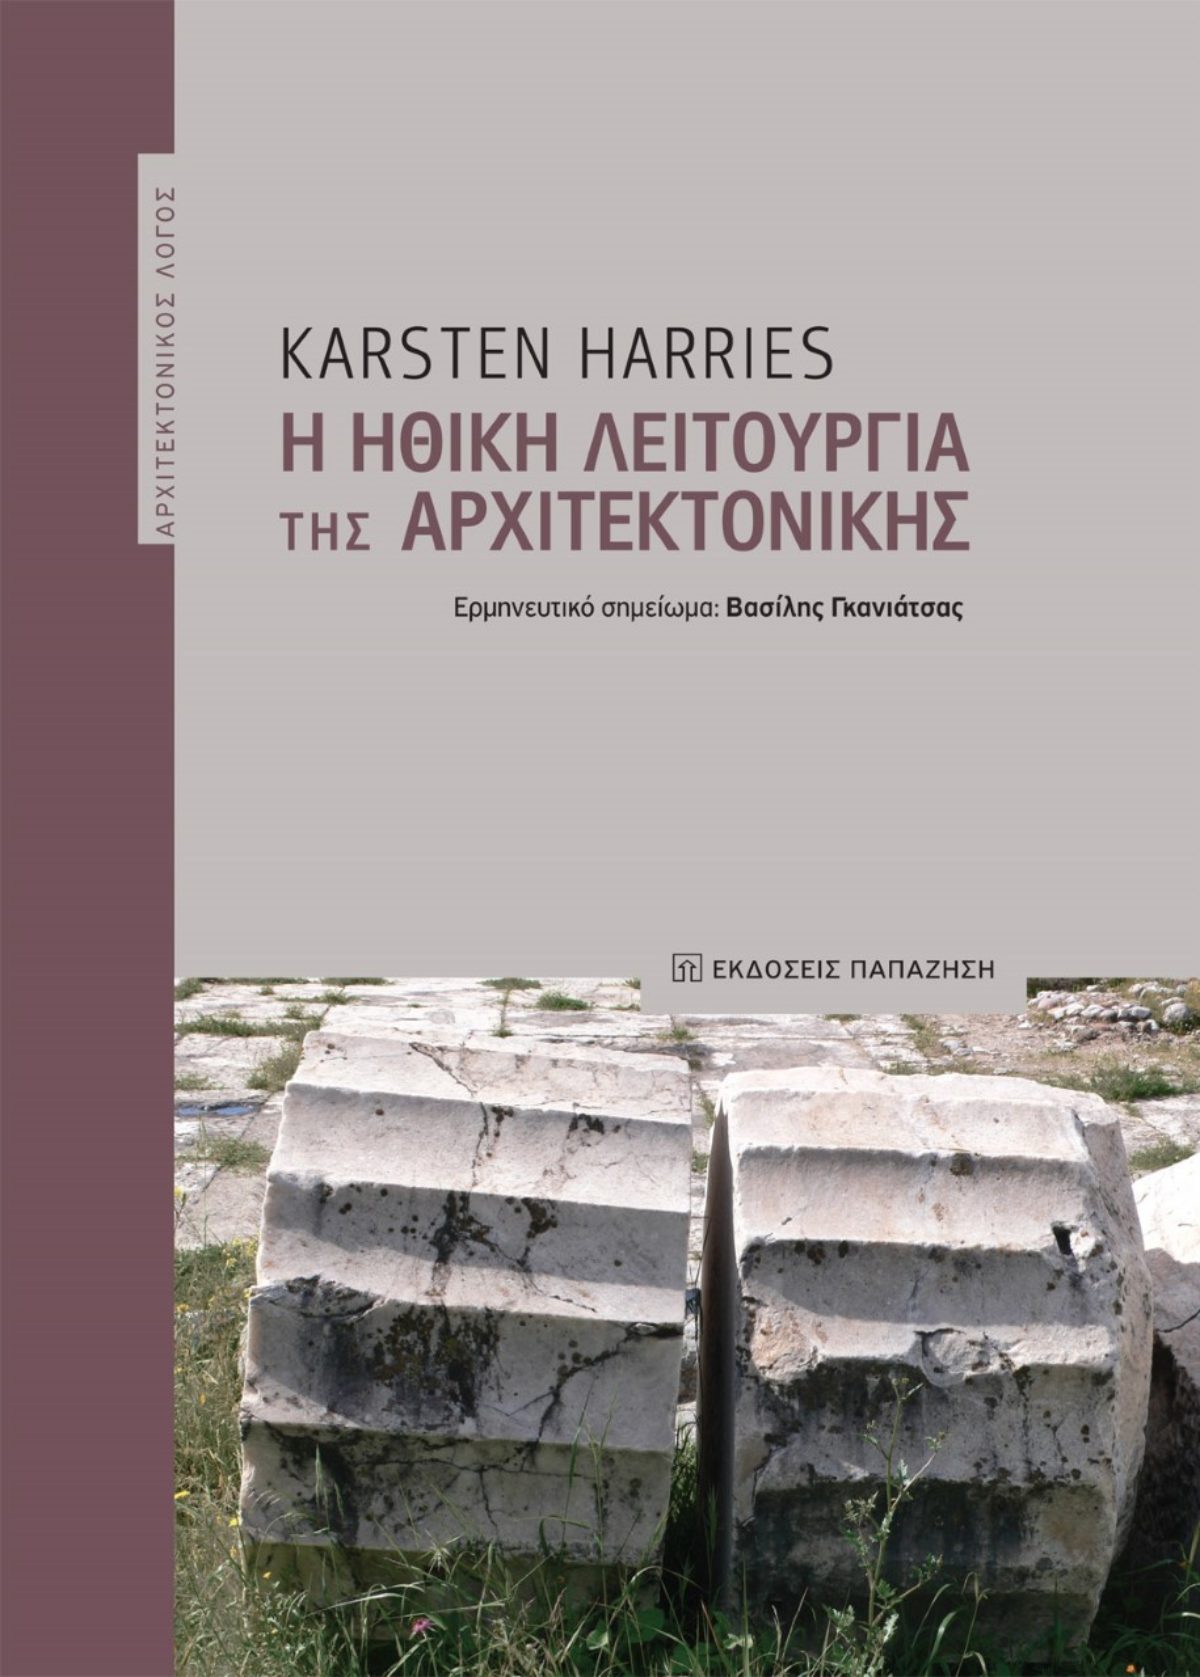 Παρουσίαση του βιβλίου «Η Ηθική λειτουργία της Αρχιτεκτονικής» / Karsten Harries / επιστημονική επιμέλεια Βασίλης Γκανιάτσας / Βιβλιοπωλείο ΙΑΝΟΣ στην Αθήνα, 28.03.23